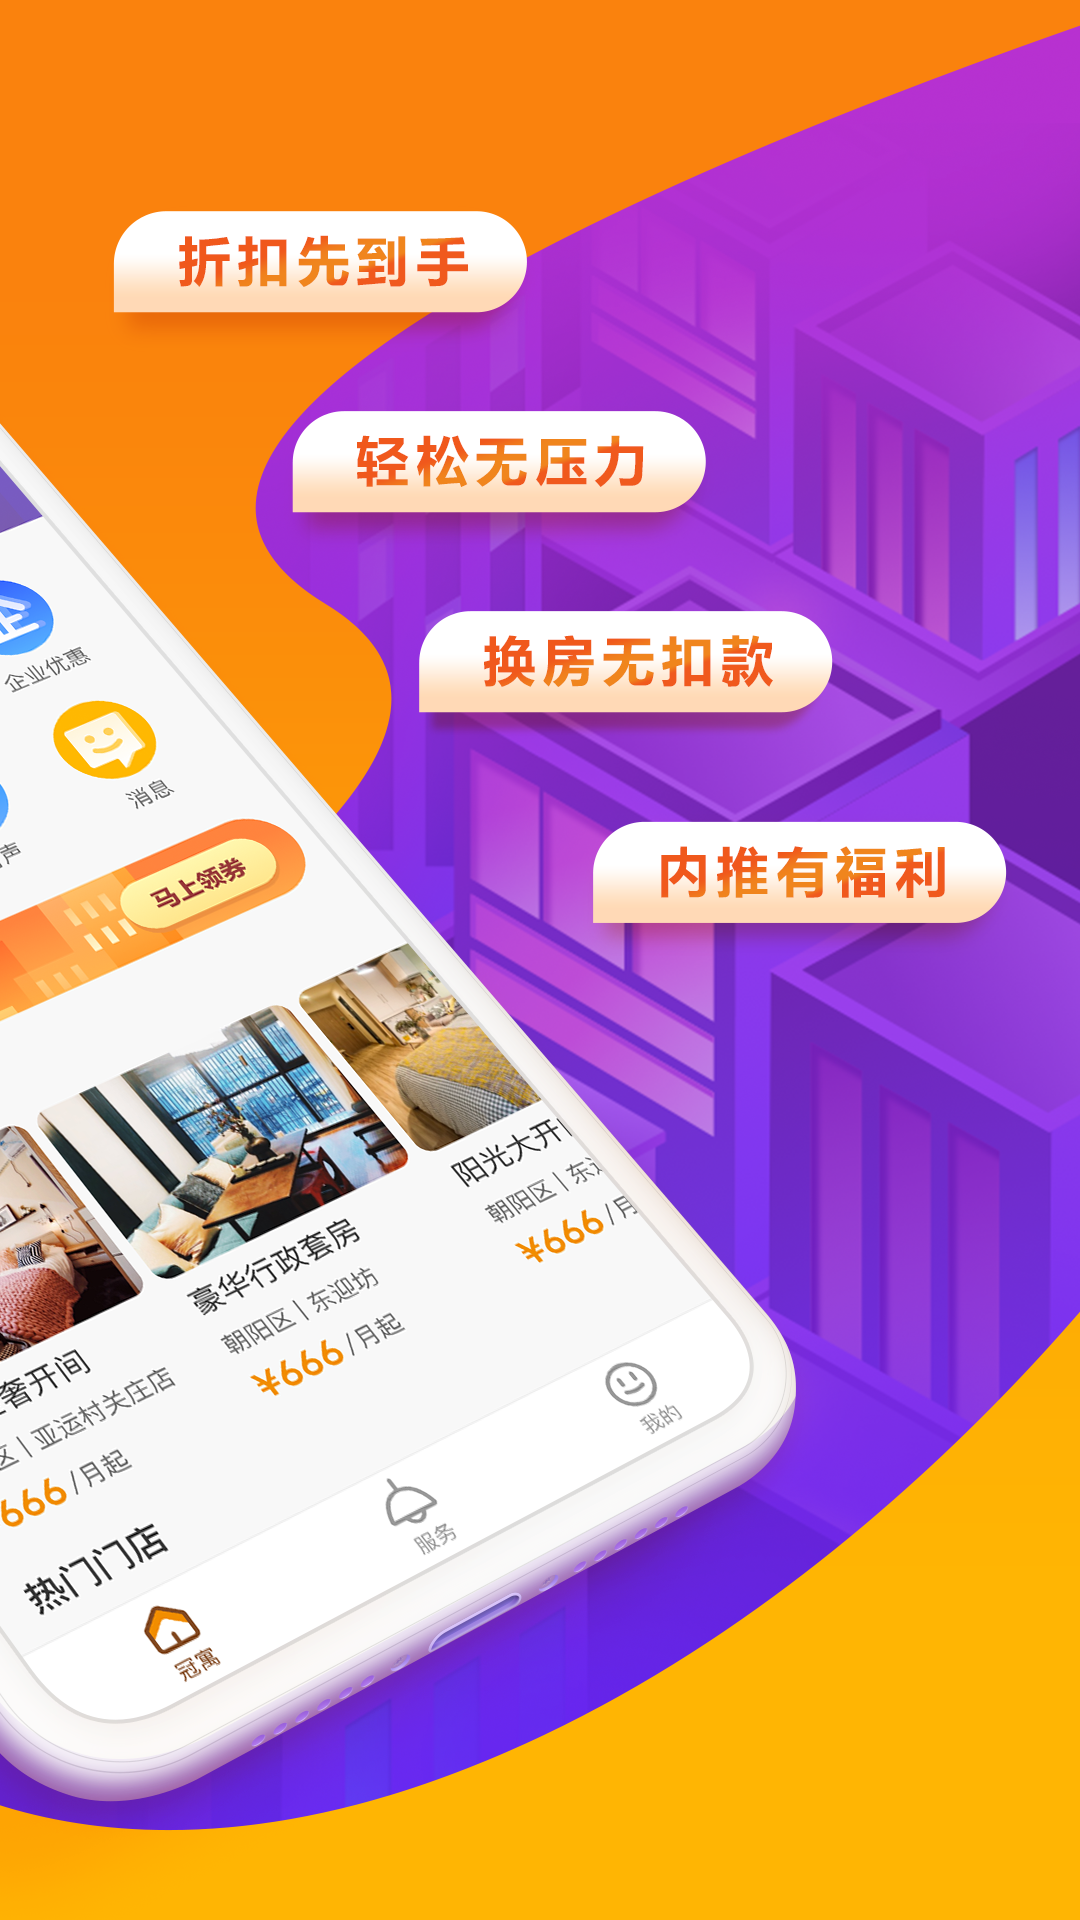 冠寓公寓app下载-龙湖冠寓appv4.13.15 最新版